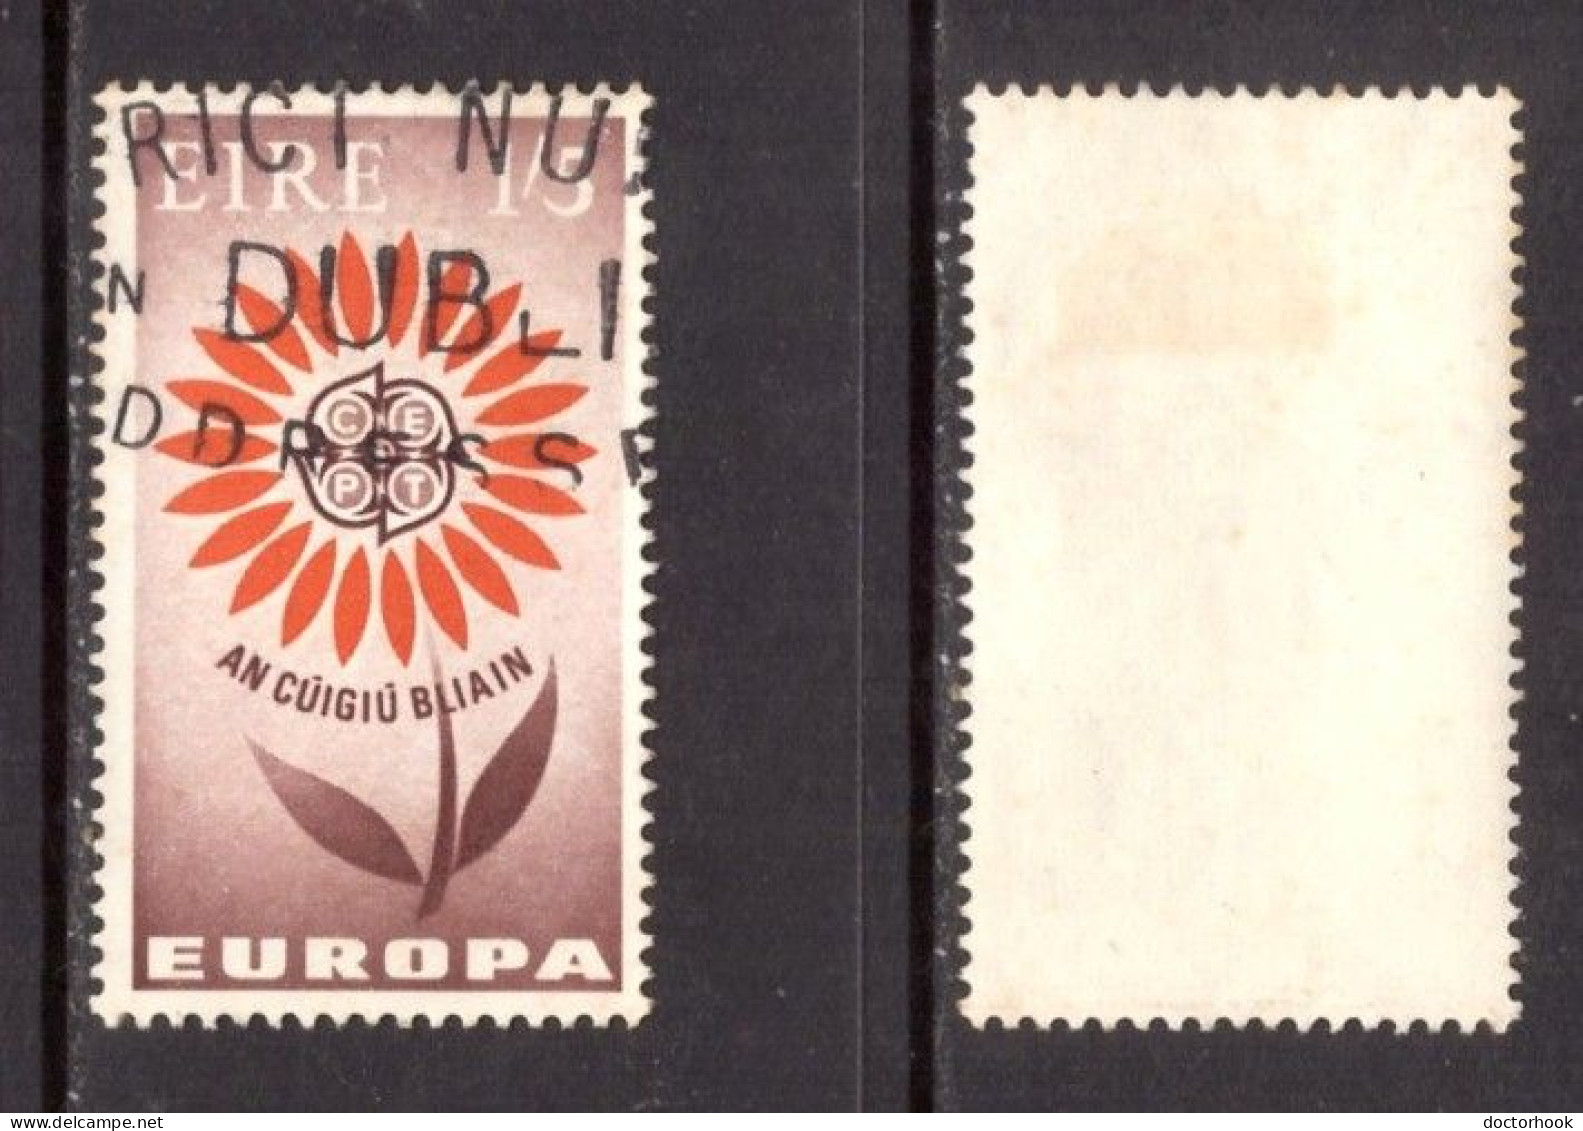 IRELAND   Scott # 197 USED (CONDITION AS PER SCAN) (Stamp Scan # 967-11) - Gebraucht